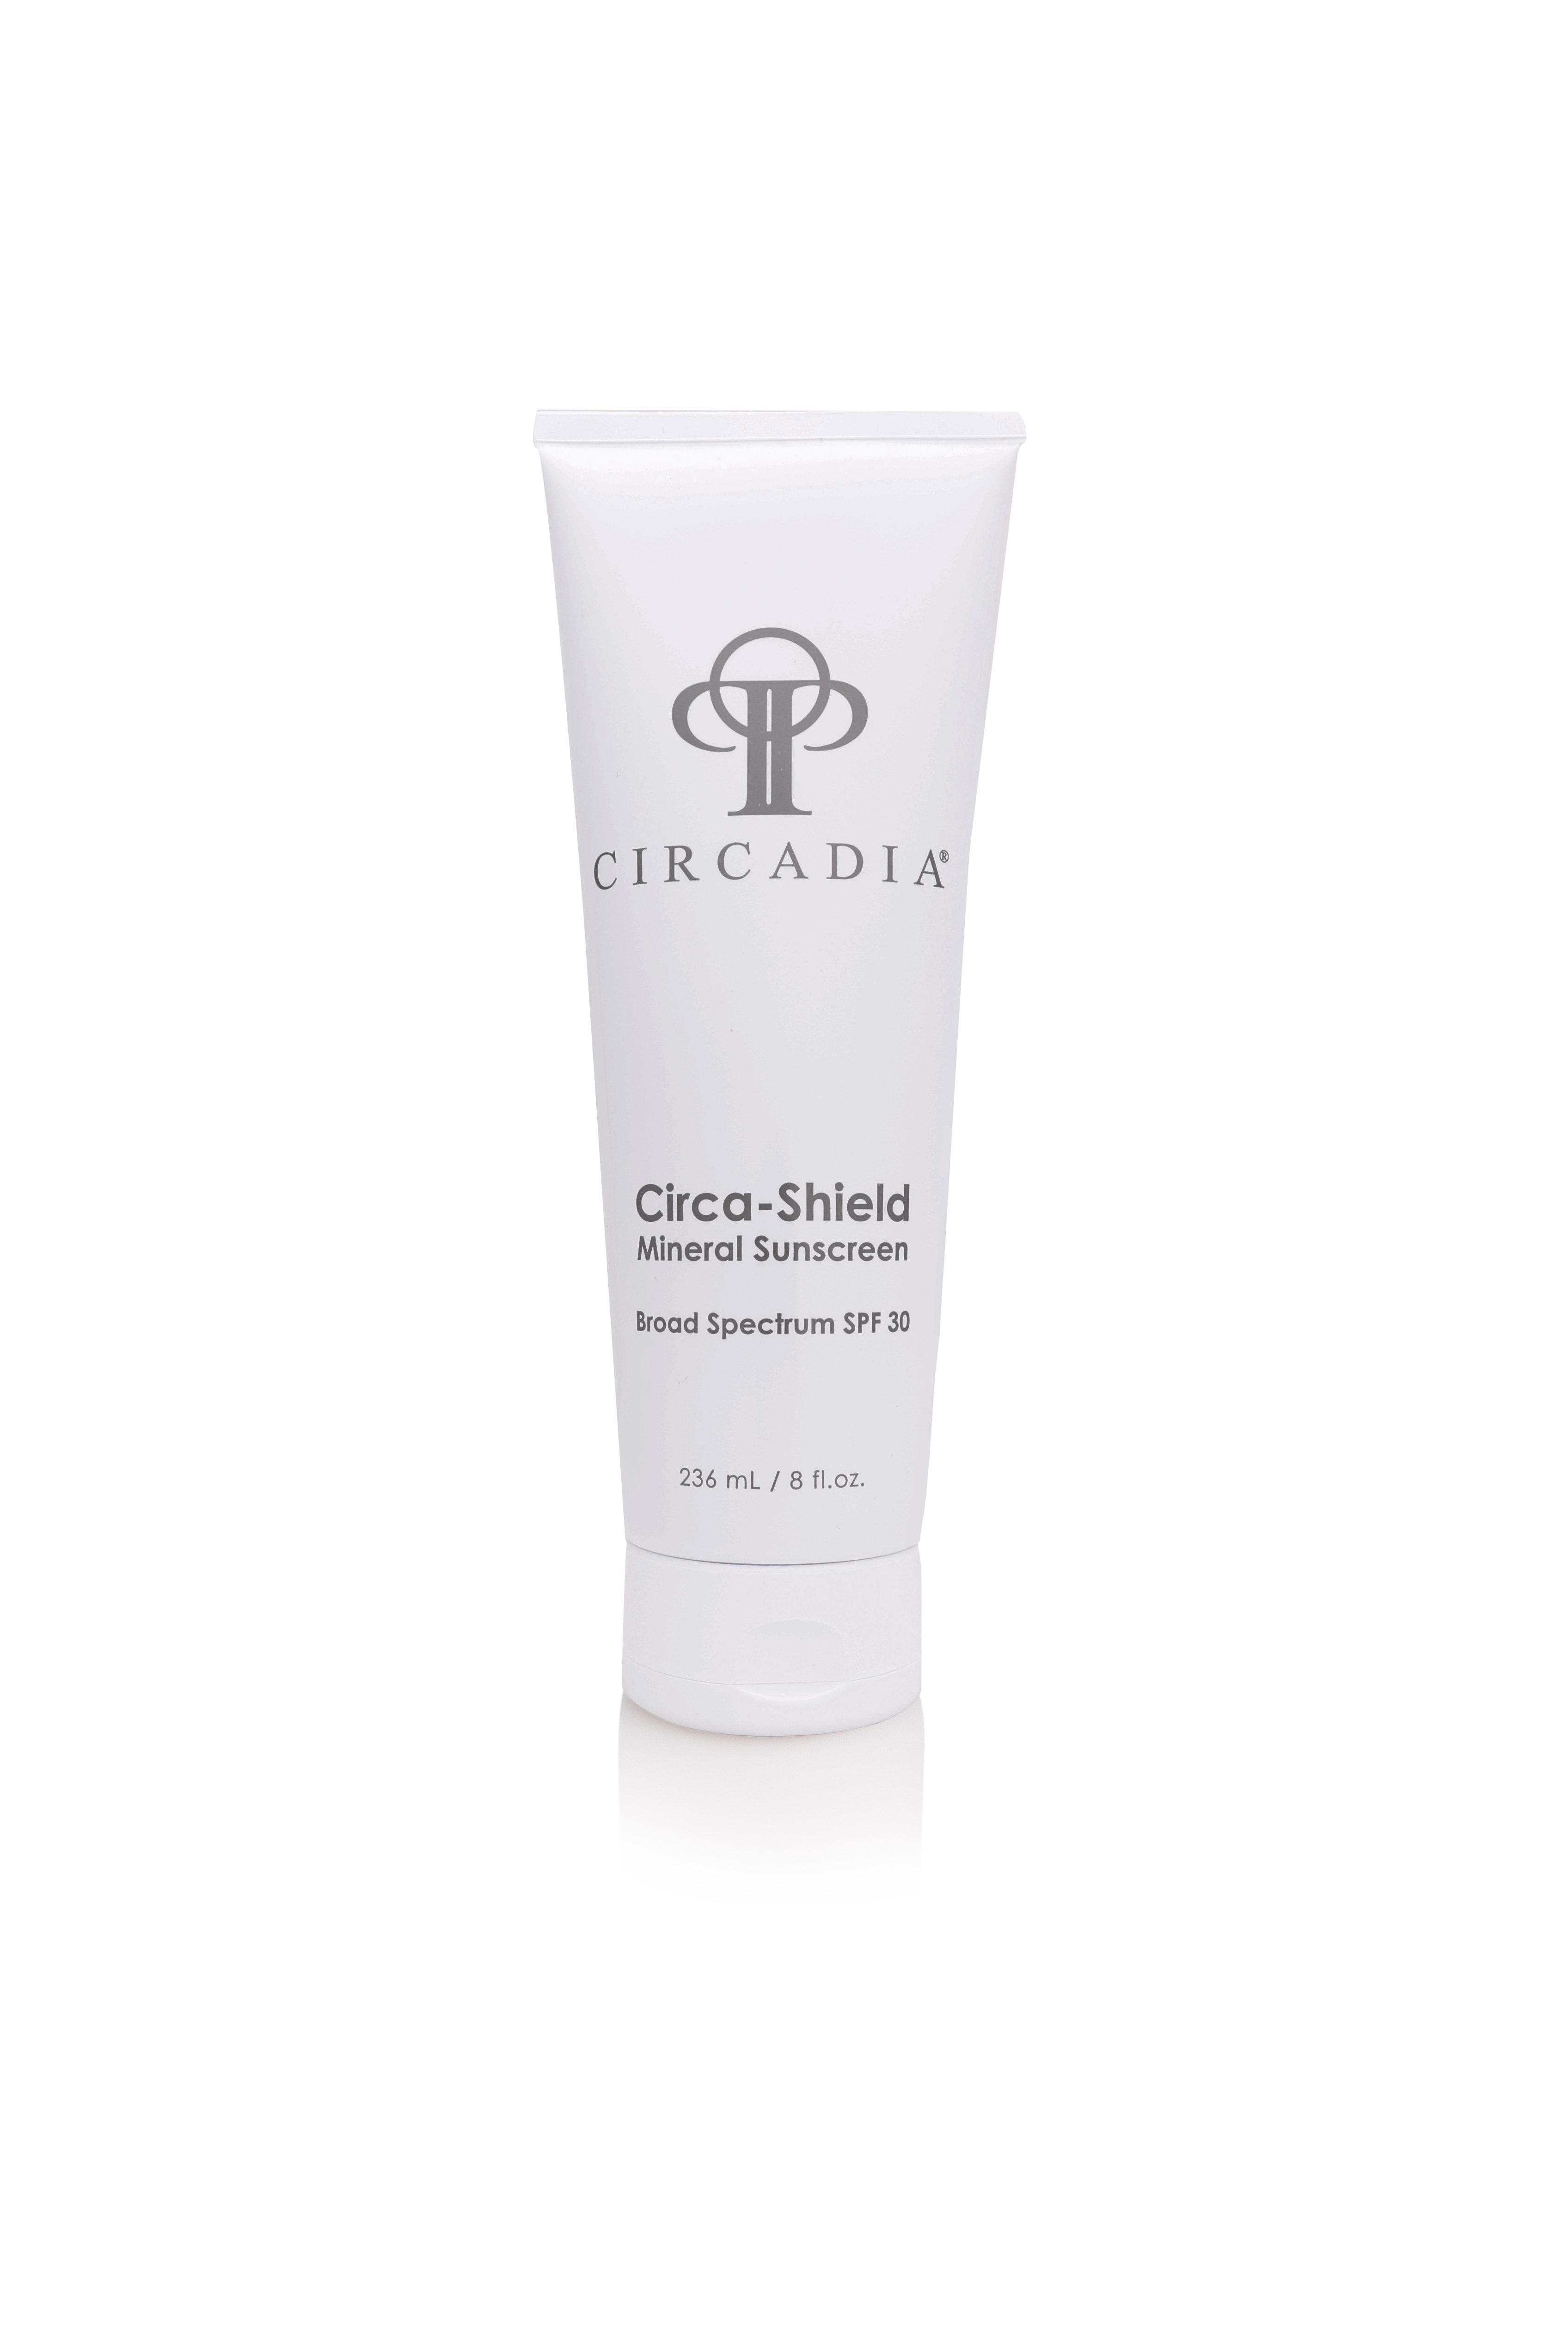 Circa-Shield - Mineral Sunscreen SPF 30